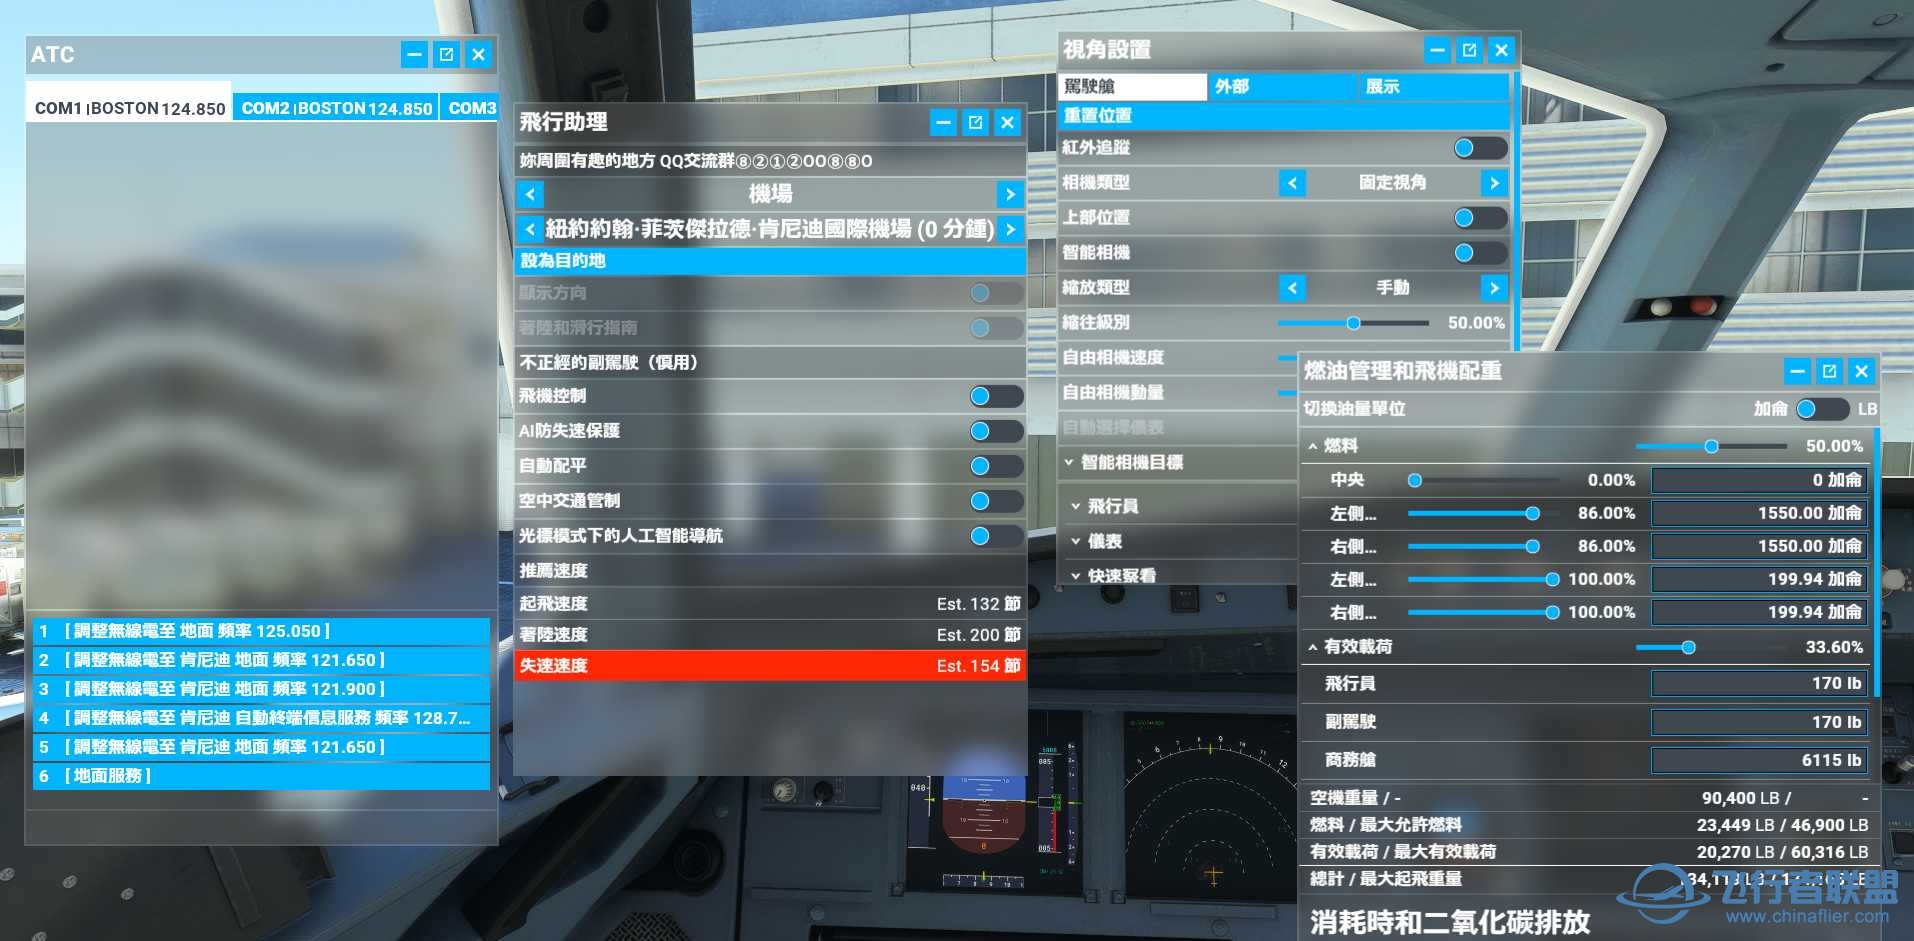 微软模拟飞行2020 1.18.14 繁体中文4.0发布版-517 